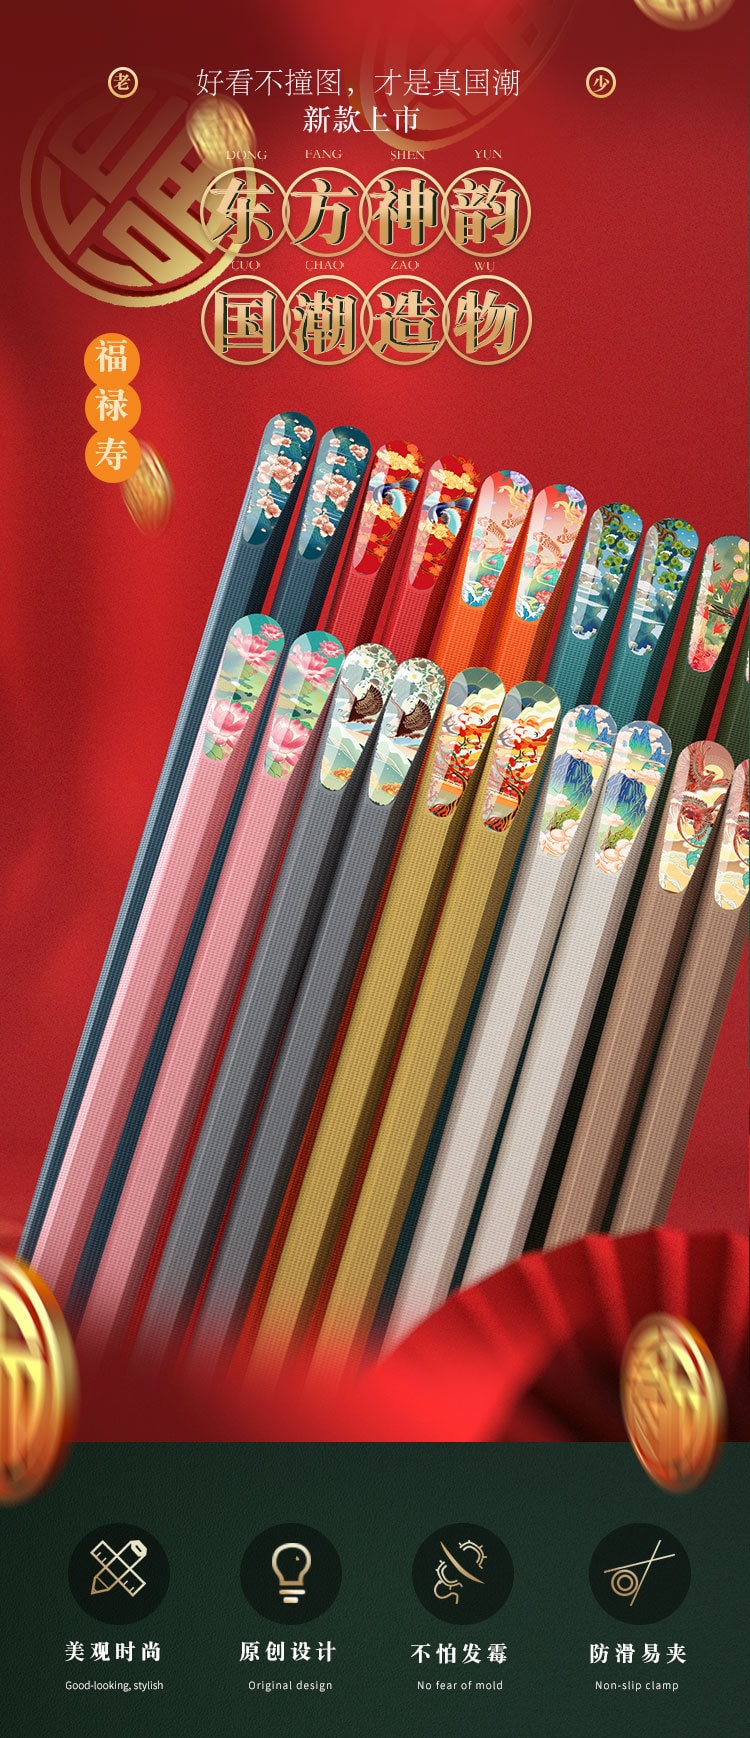 【中国直邮】亲太太  高档耐高温分餐筷子防滑防霉家用筷子环保纤维   10双装